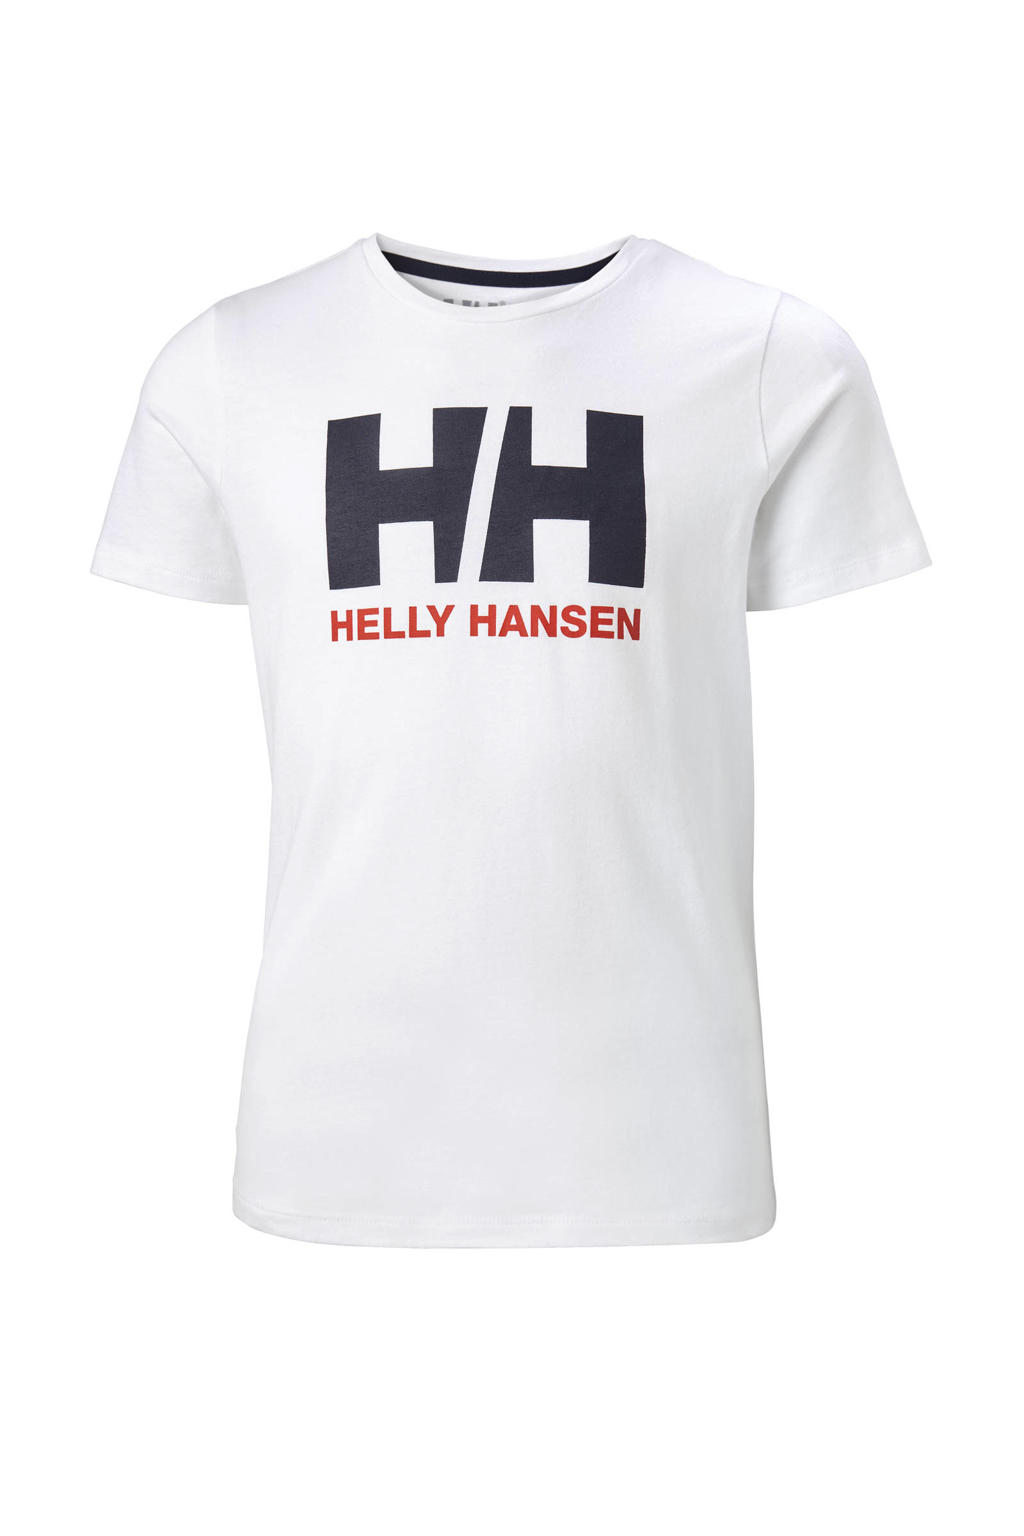 Witte jongens en meisjes Helly Hansen unisex T-shirt van katoen met logo dessin, korte mouwen en ronde hals